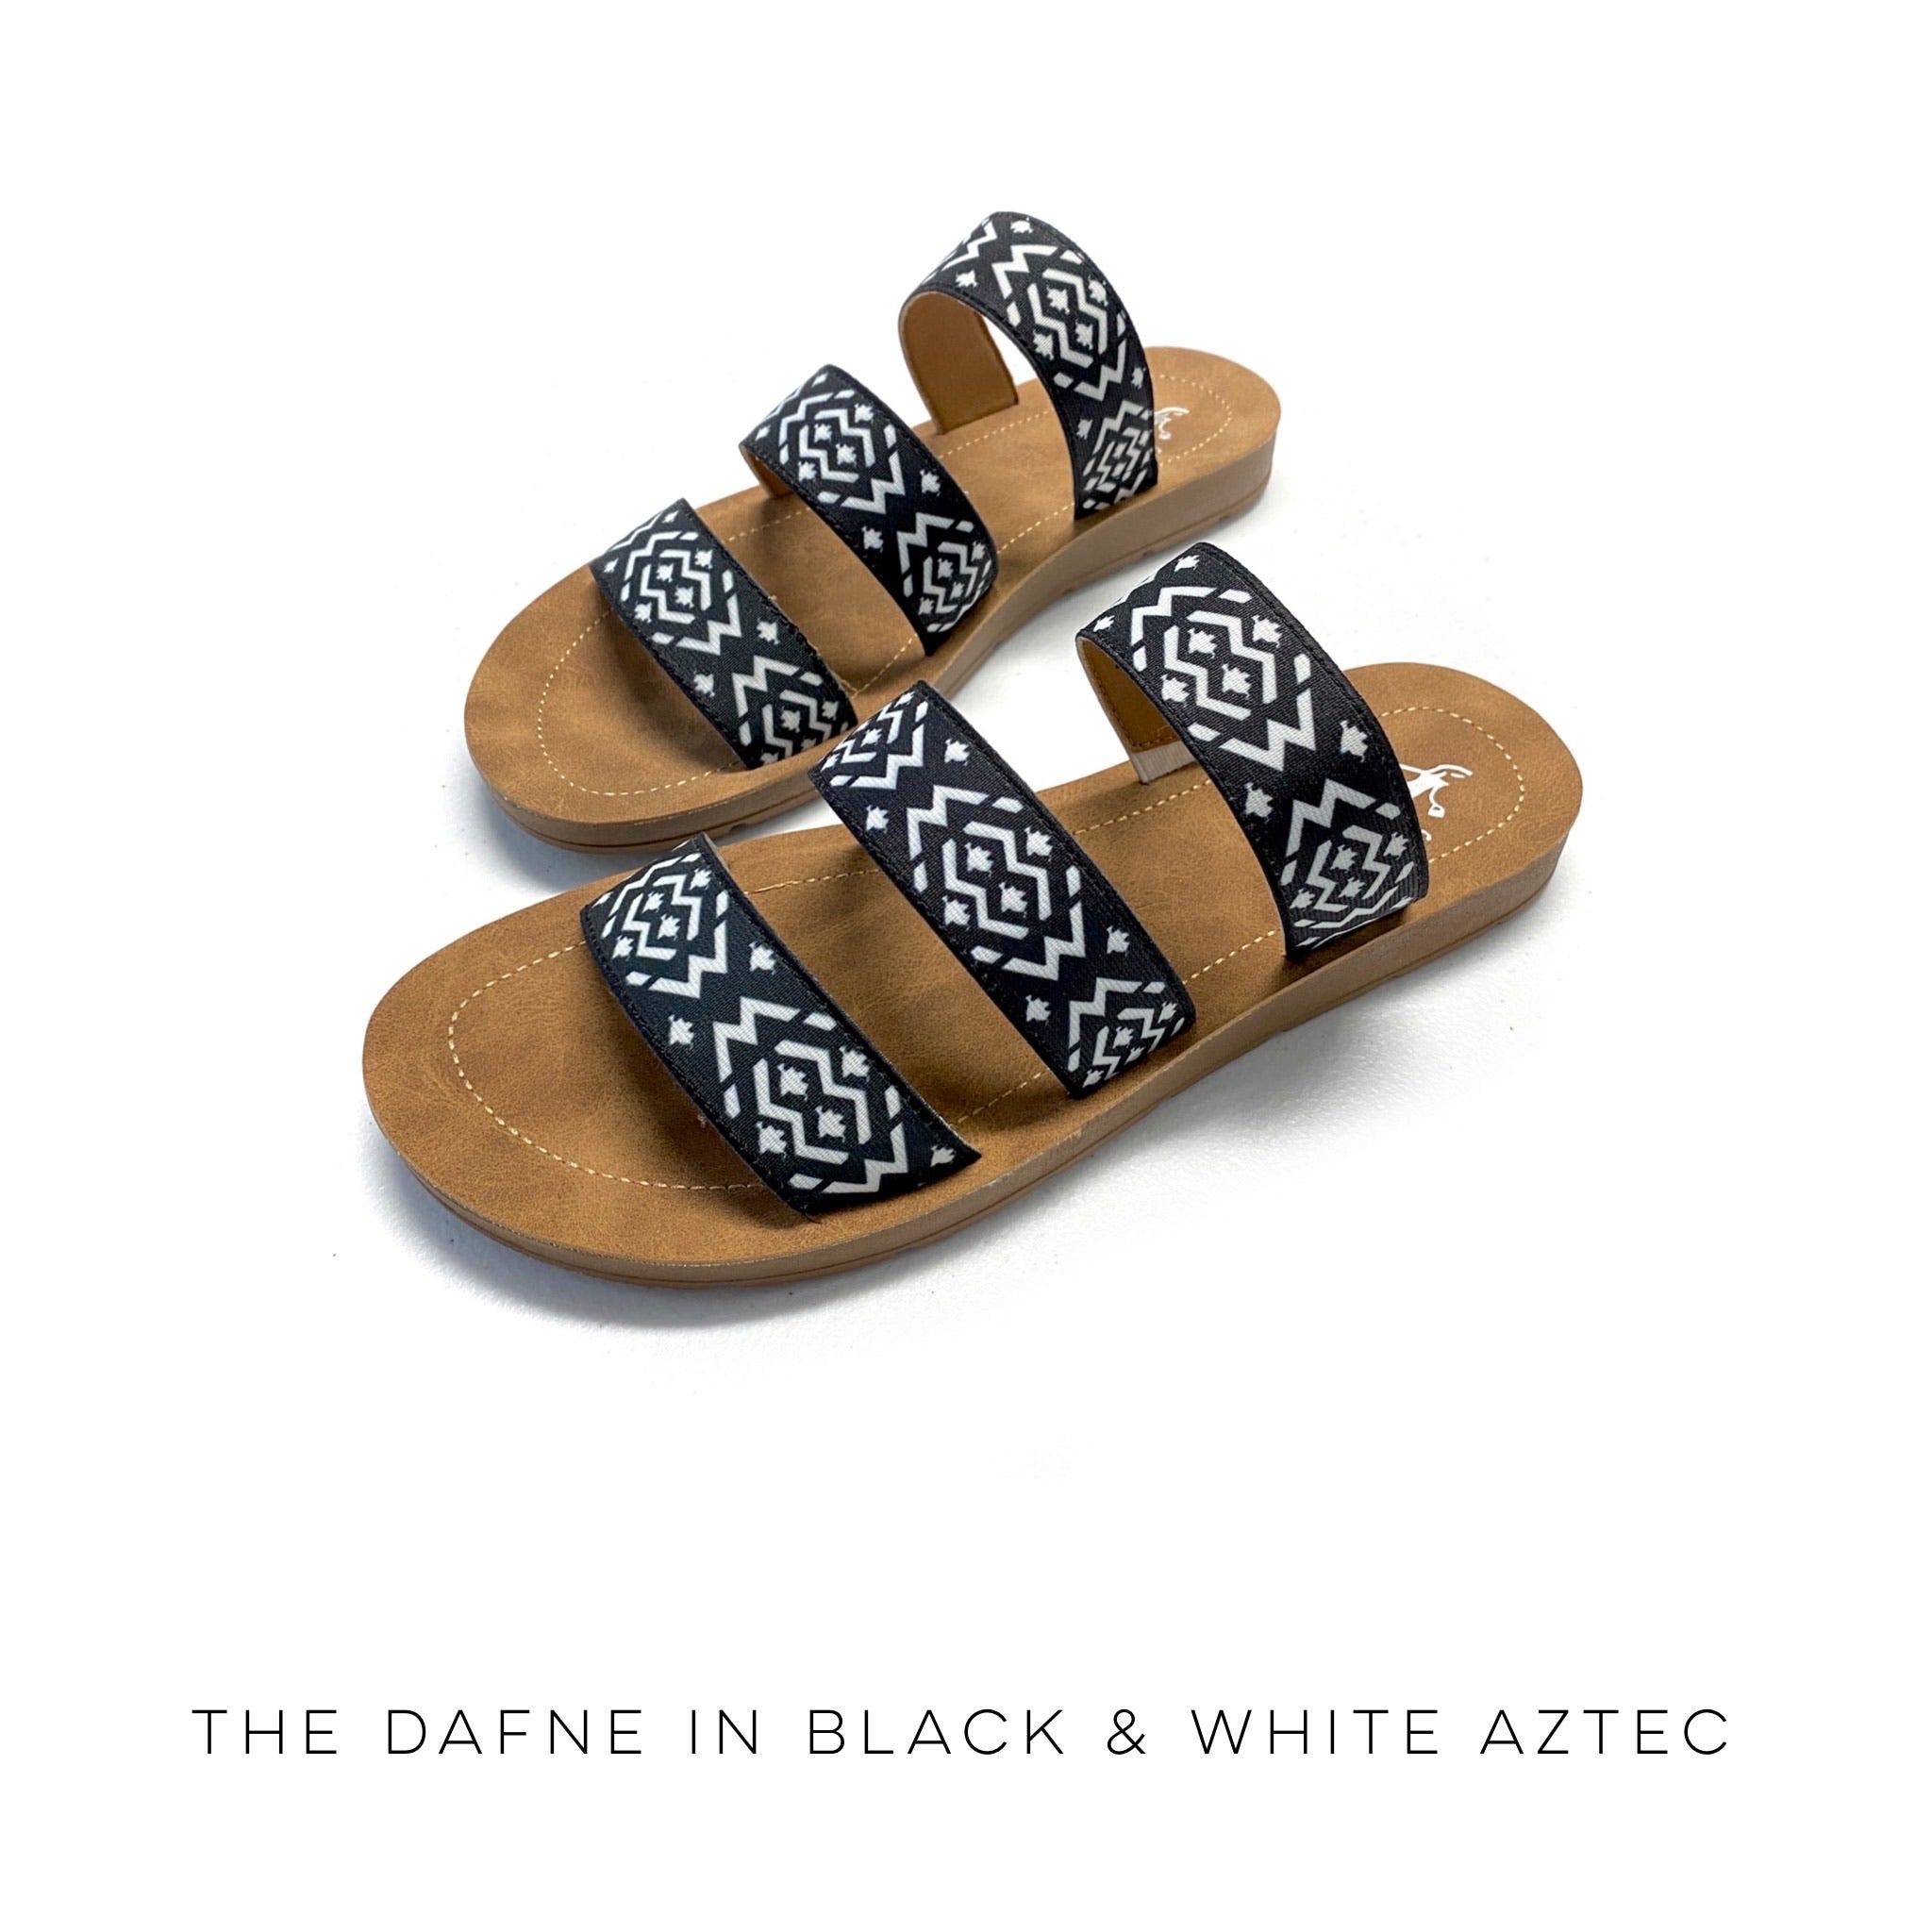 The Dafne in Black & White Aztec